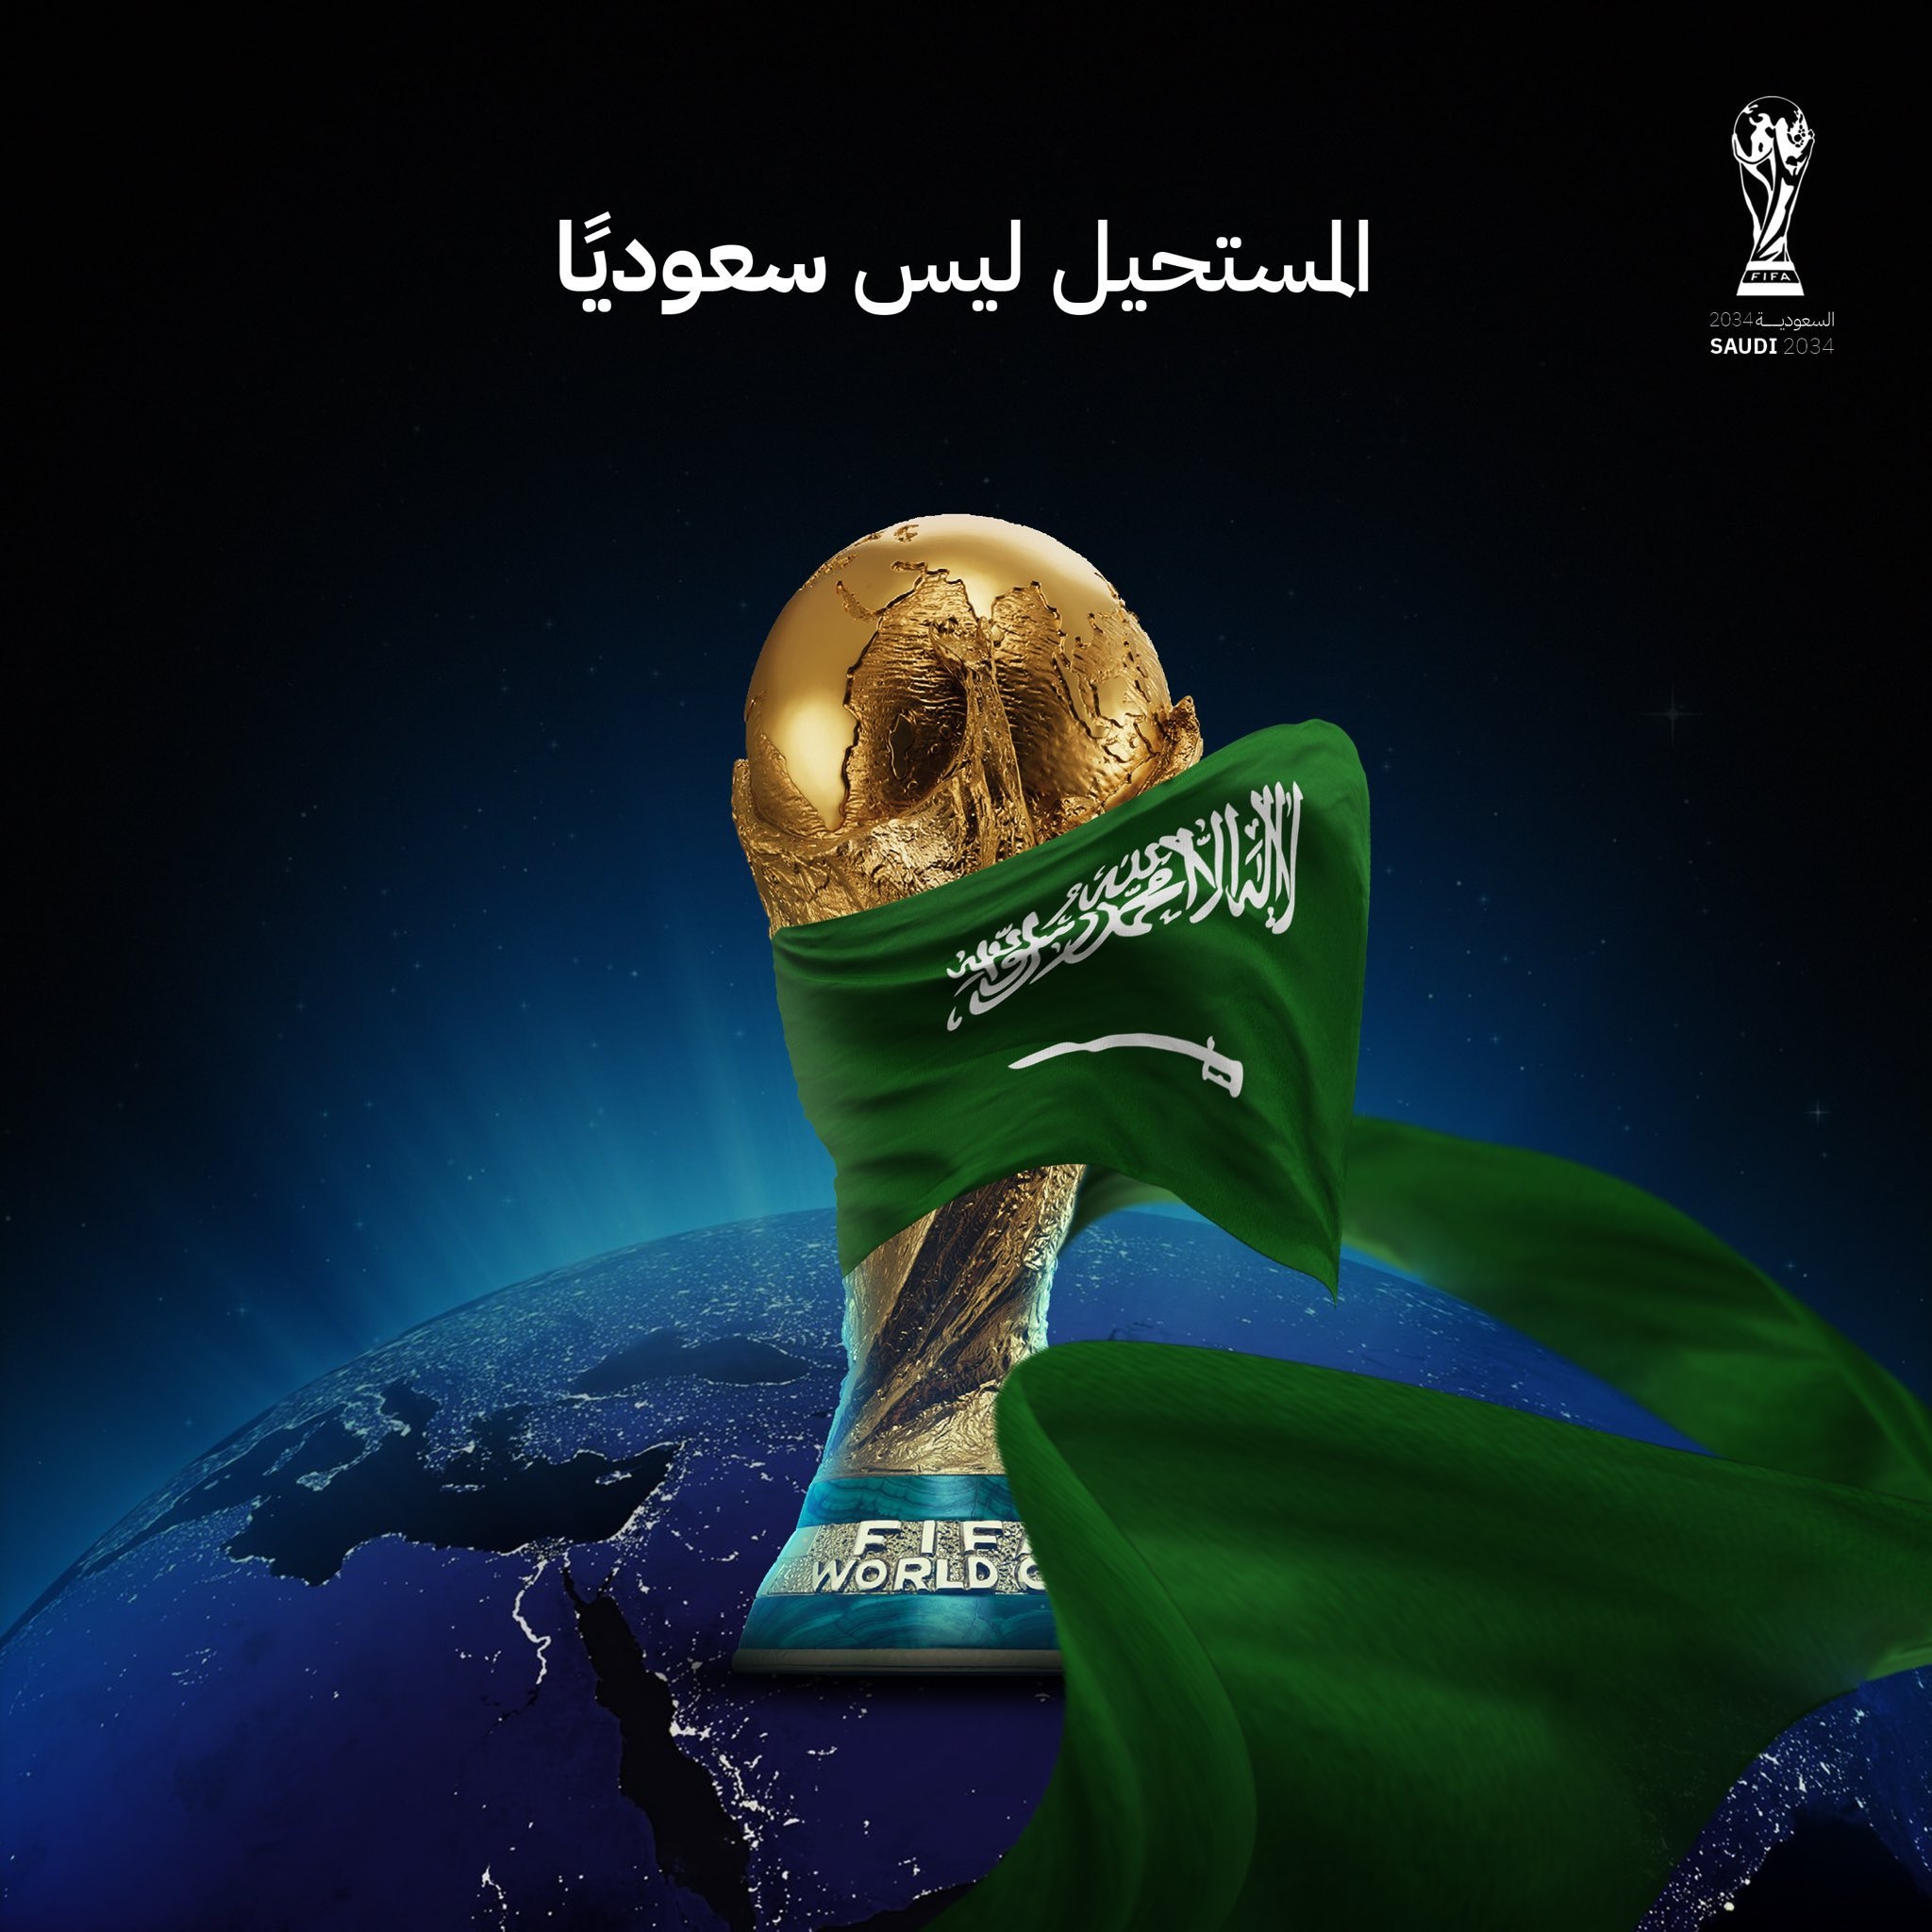 定了FIFA*因凡蒂诺确认：2034年世界杯将在沙特举办